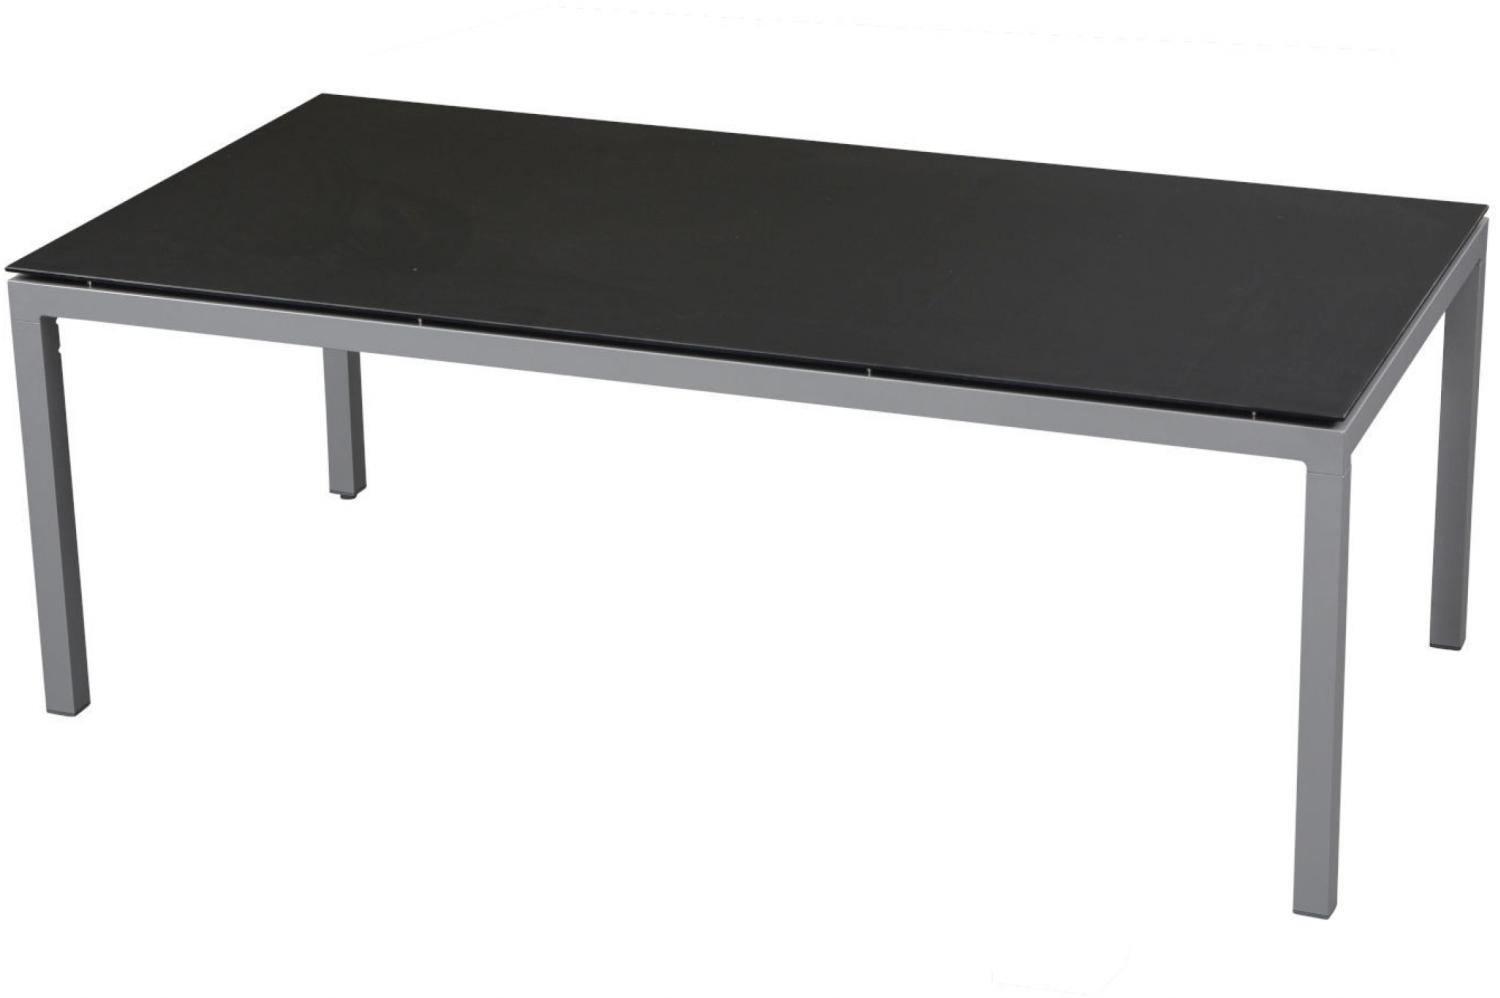 Inko Gartentisch Aluminium silber 160x90 cm Terrassentisch Tischplatte nach Wahl Deropal anthrazit Bild 1